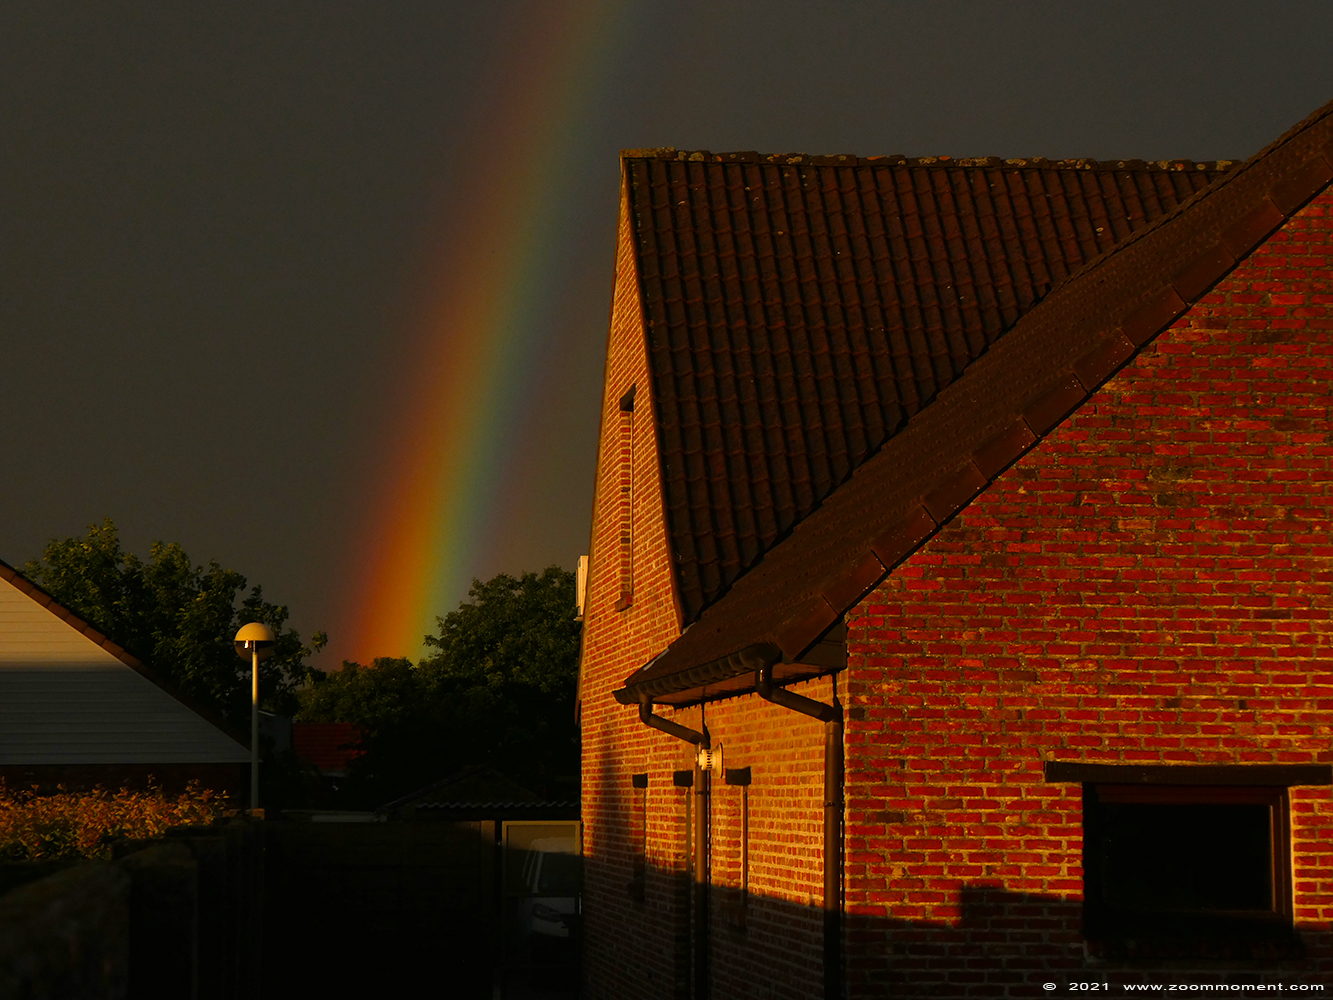 Beerse rainbow regenboog
Trefwoorden: Beerse Belgium rainbow regenboog